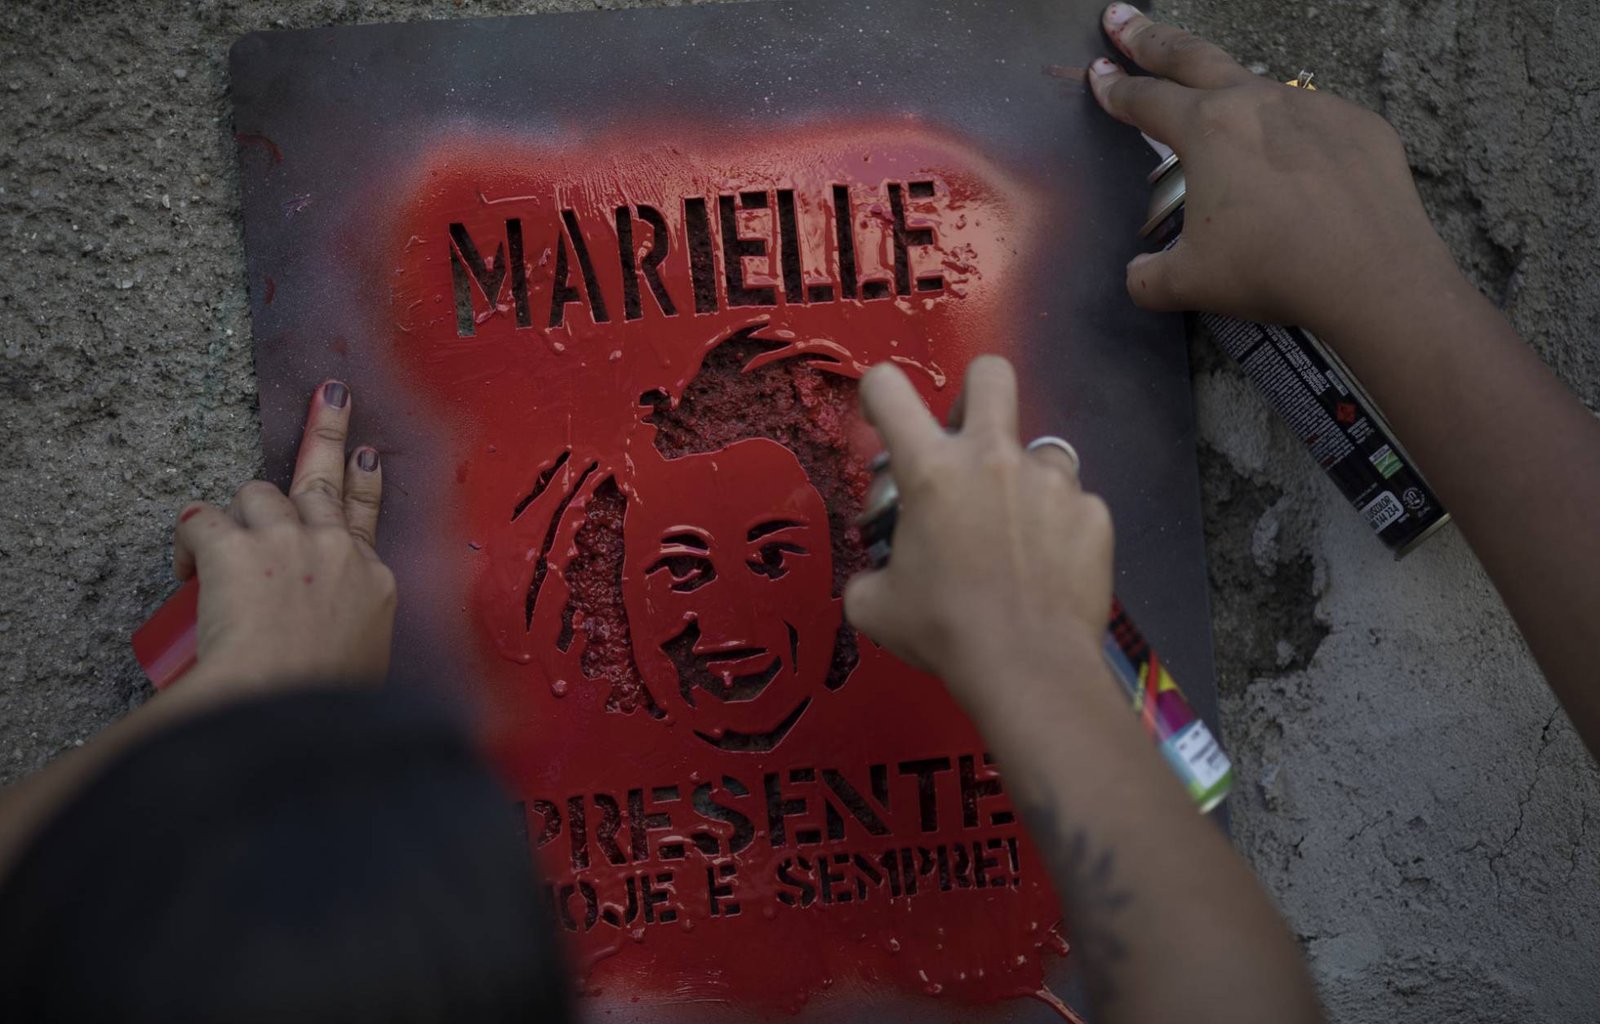 Marielle Franco, Racismo e Fake News: Criminalizar a vítima para justificar sua morte